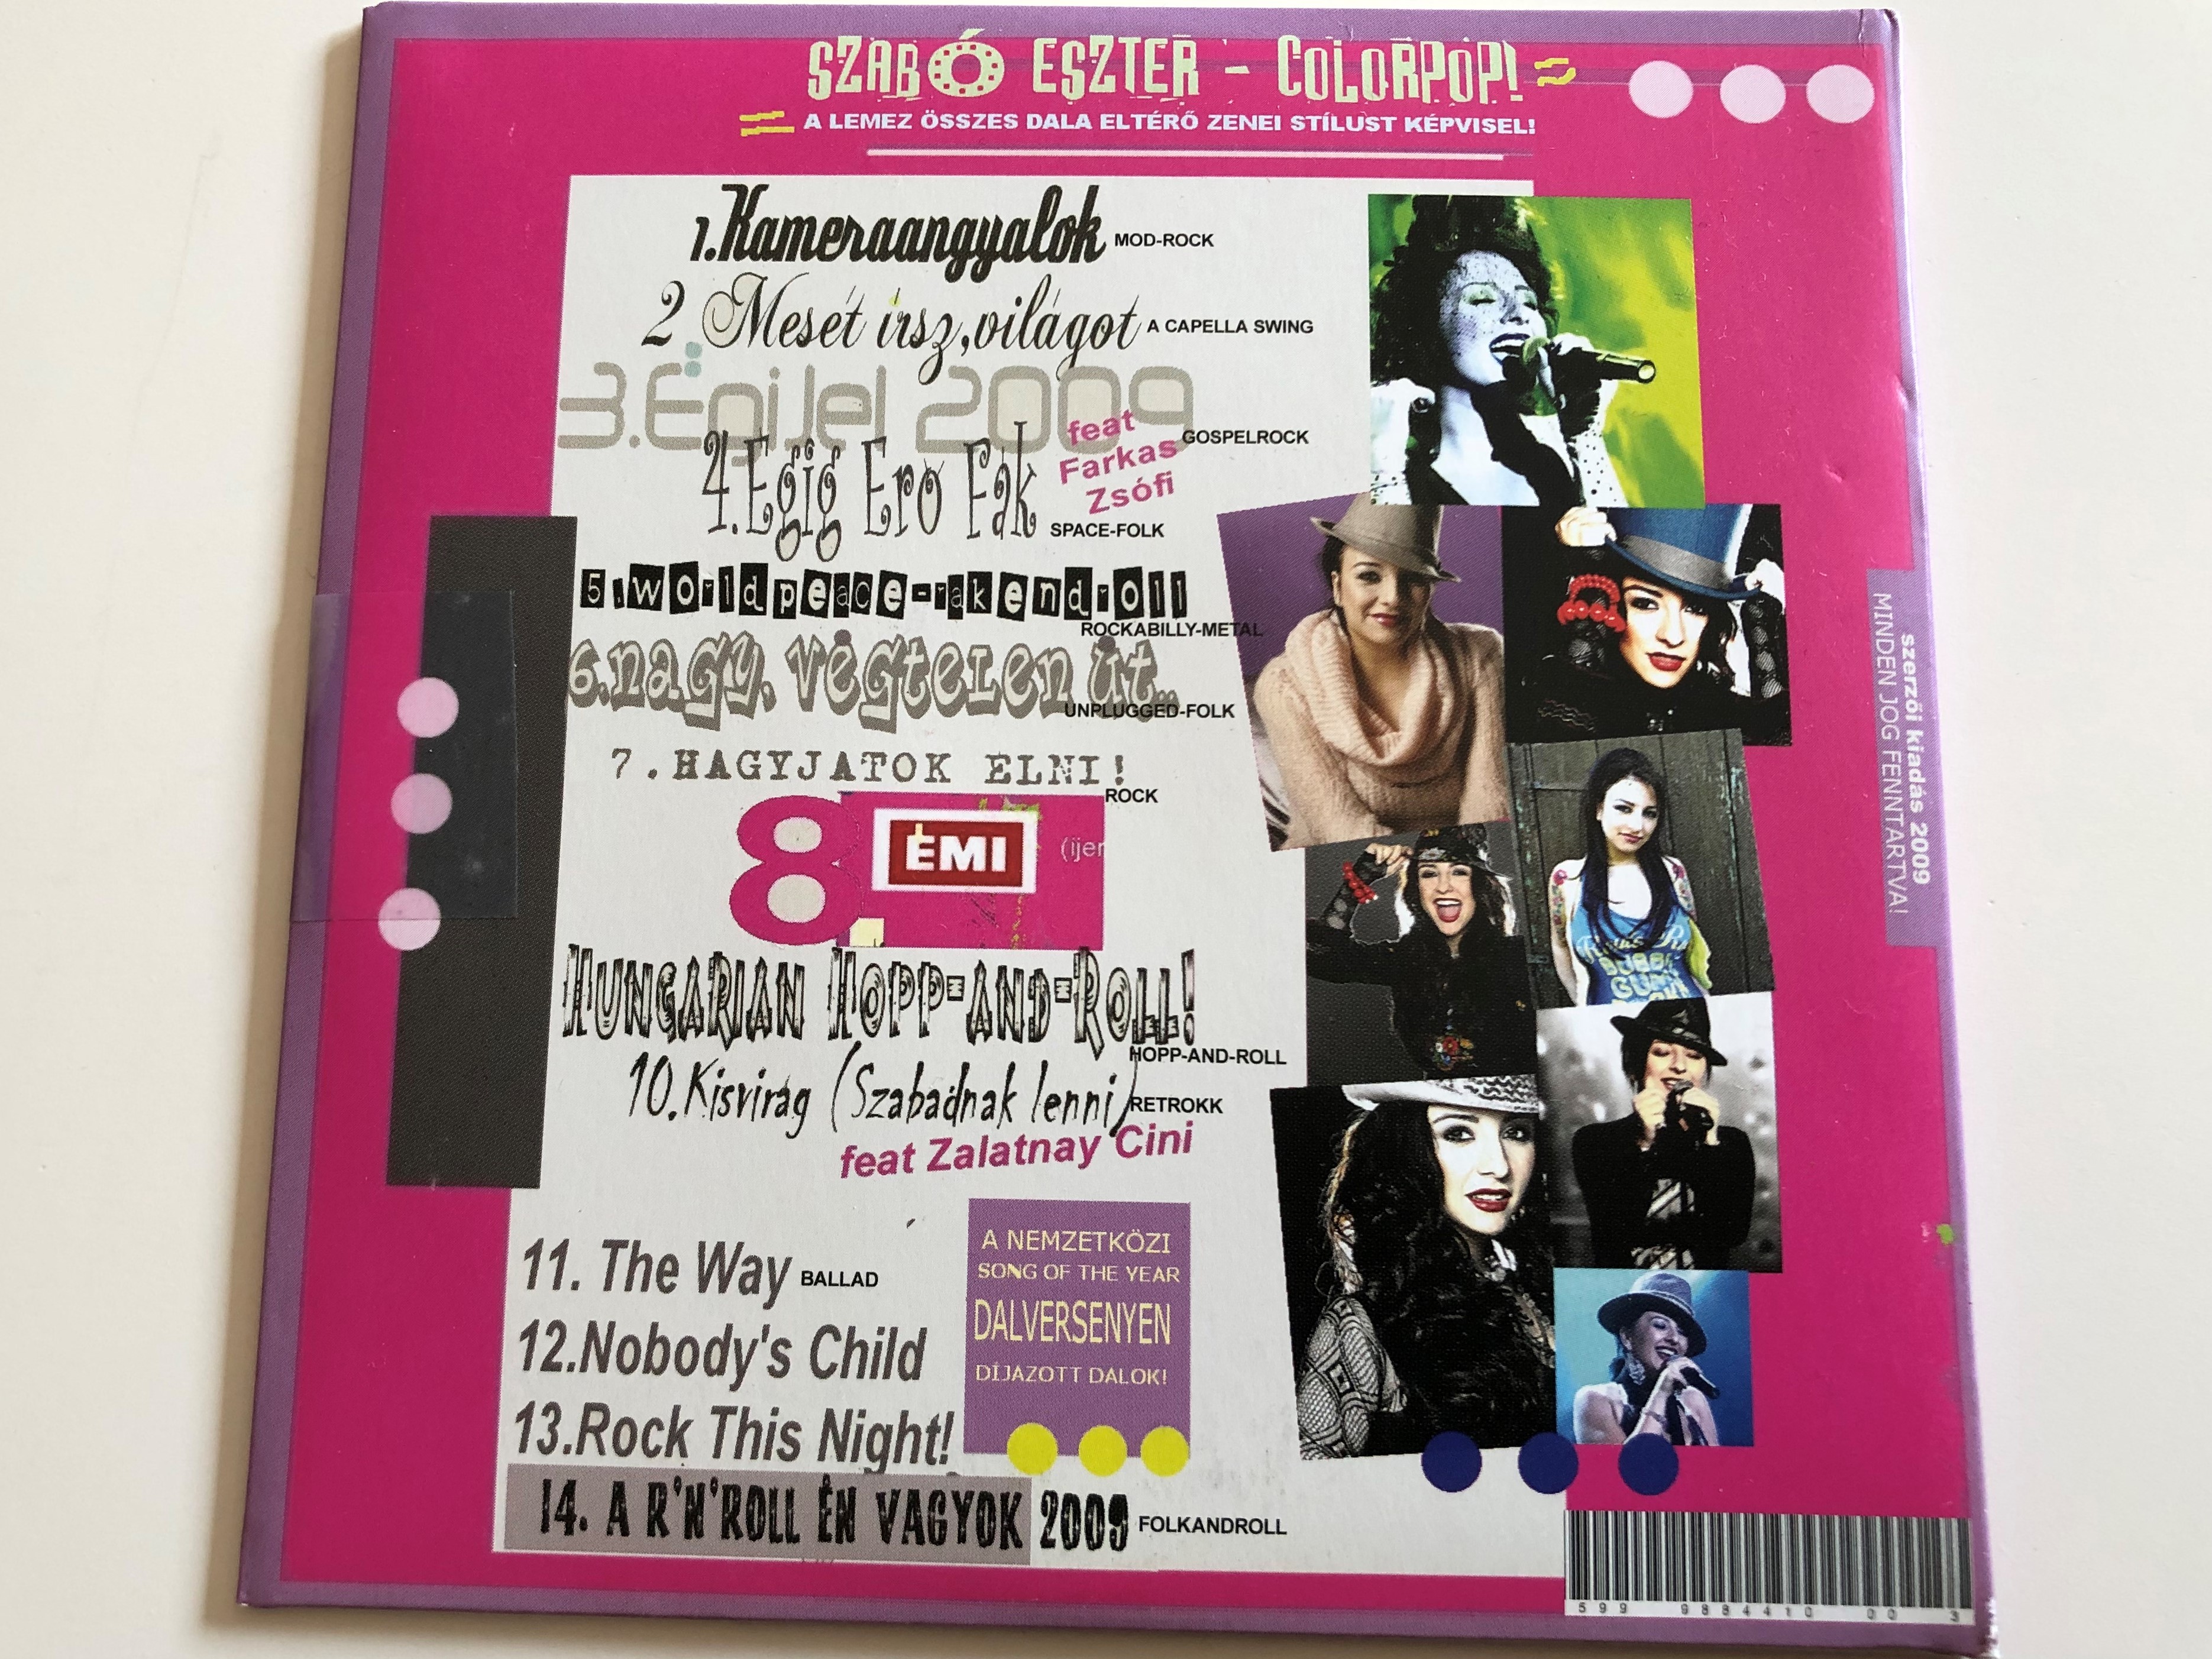 szab-eszter-colorpop-limited-edition-audio-cd-2009-a-nemzetk-zi-song-of-the-year-dalversenyen-d-jazott-dalok-2-.jpg